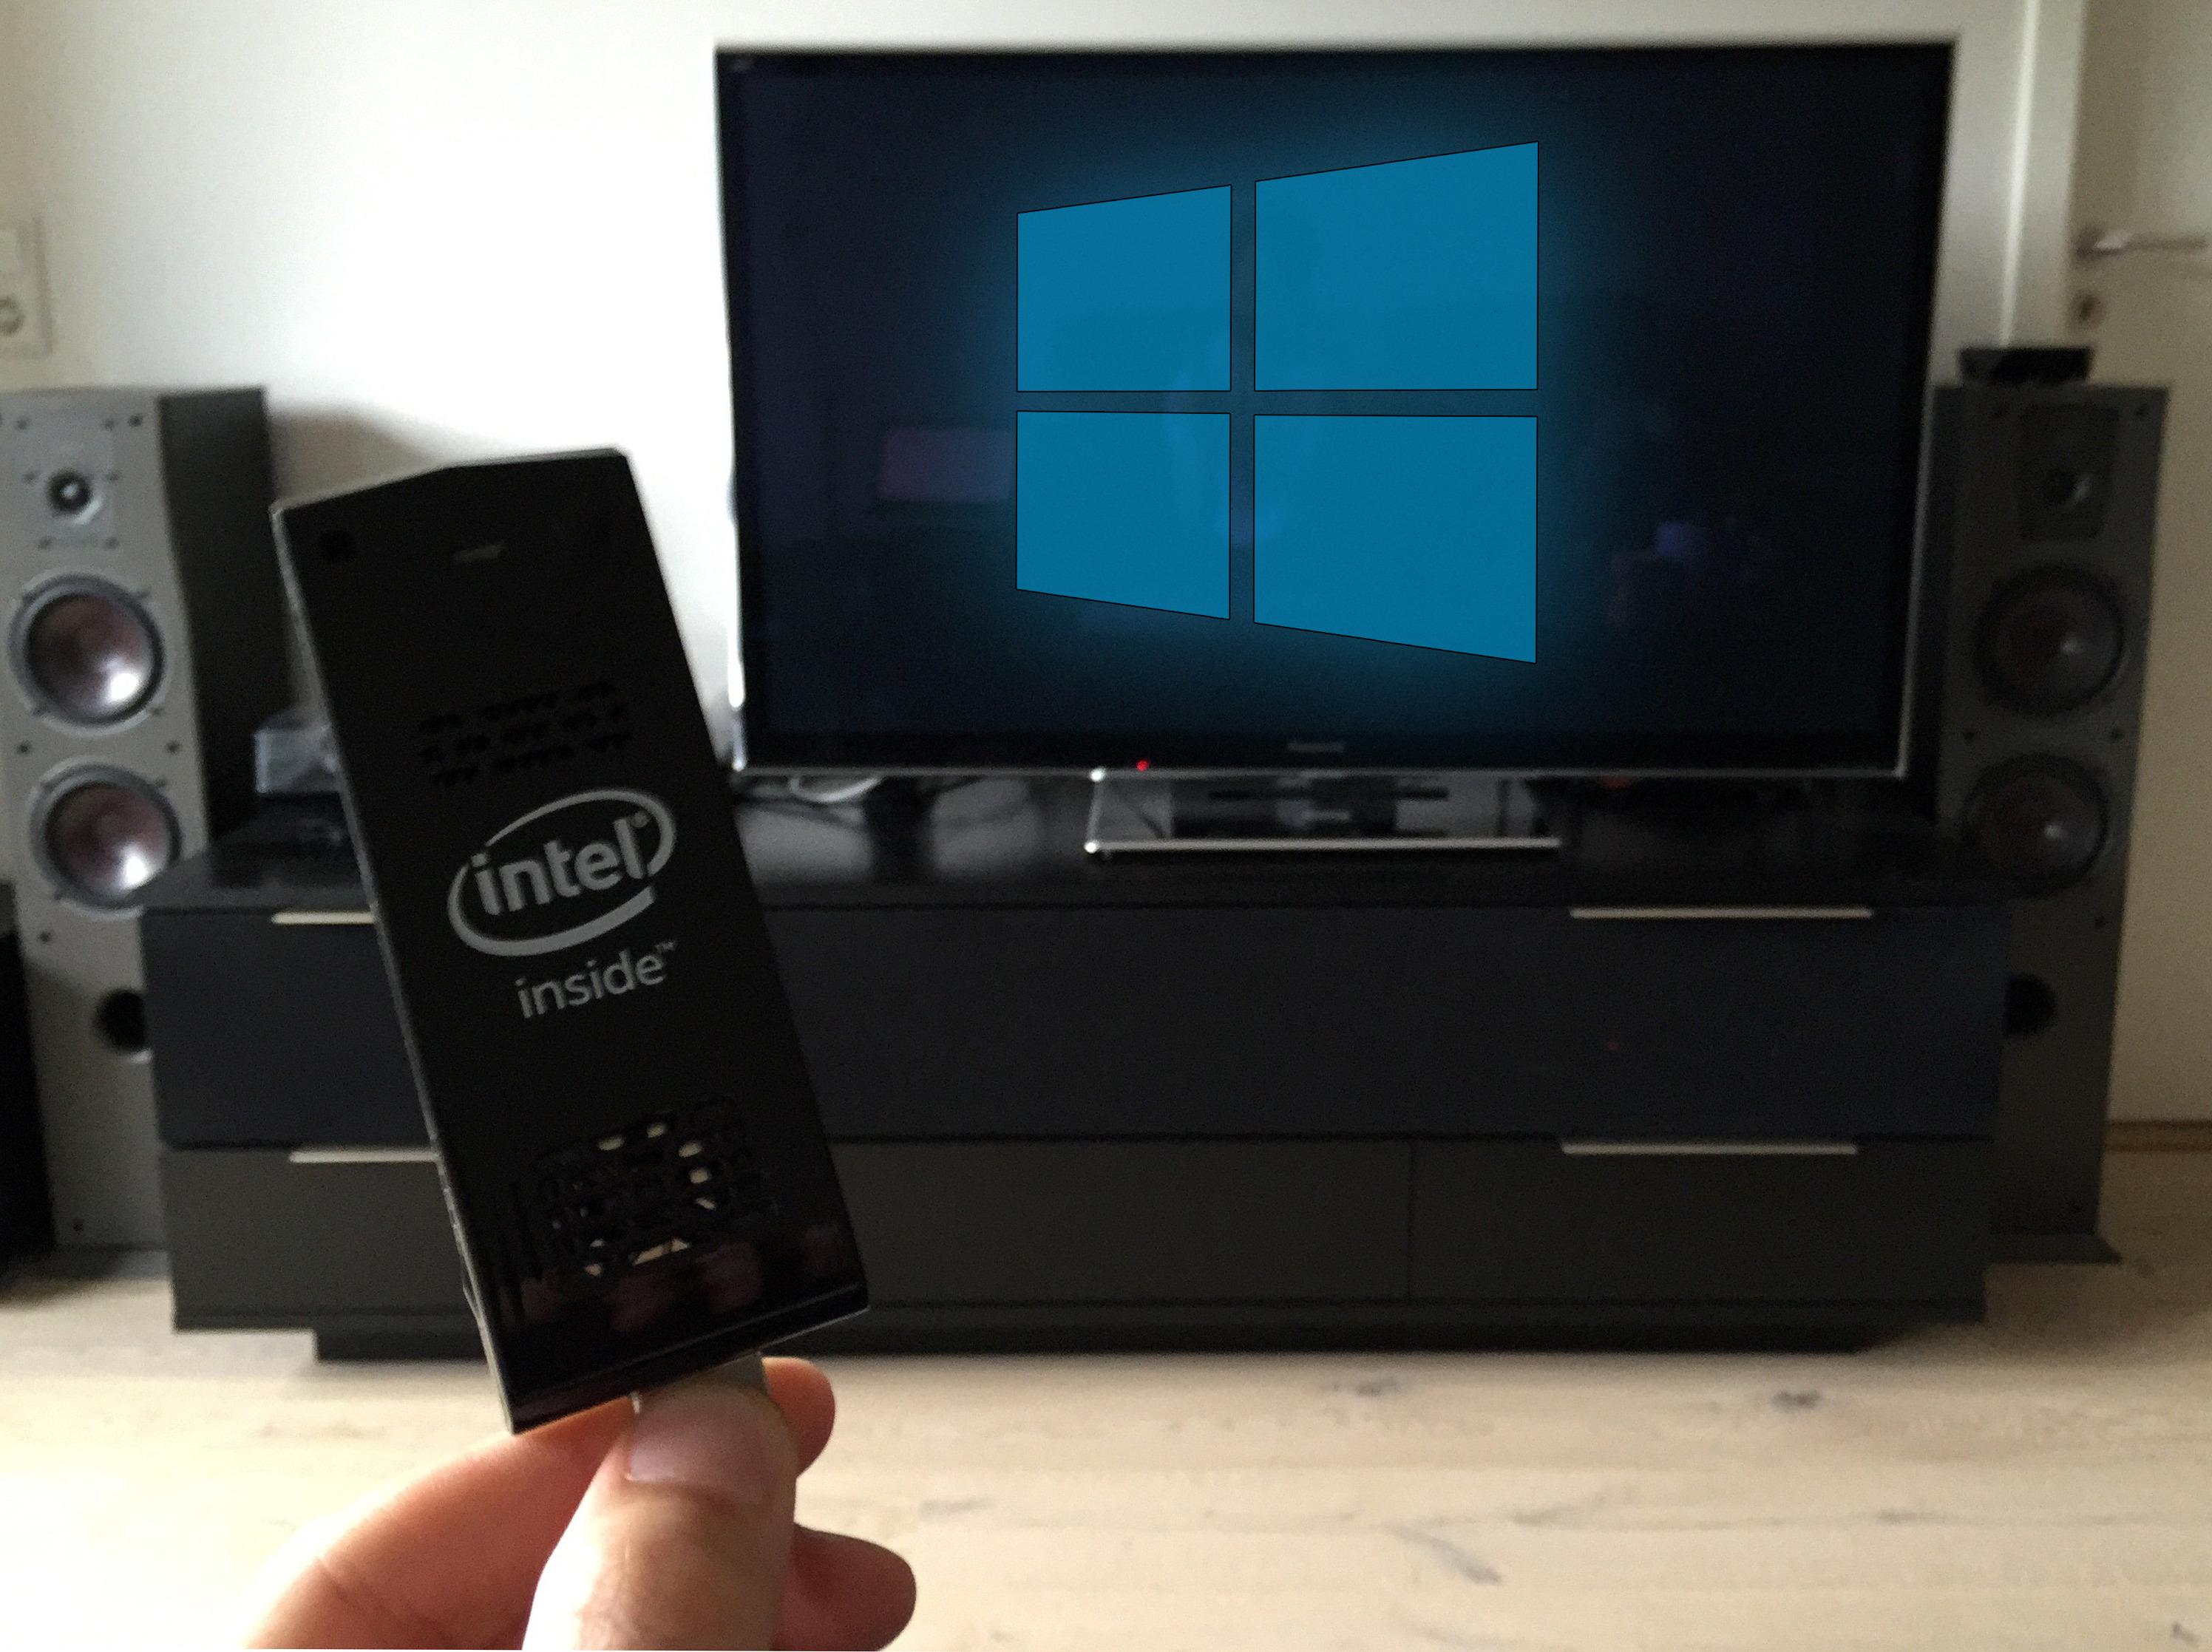 Kjør Windows 8 på hvilken skjerm du vil. Alt du trenger er ICS og en USB til Micro-USB-kabel. Foto: Anders Brattensborg Smedsrud, Tek.no